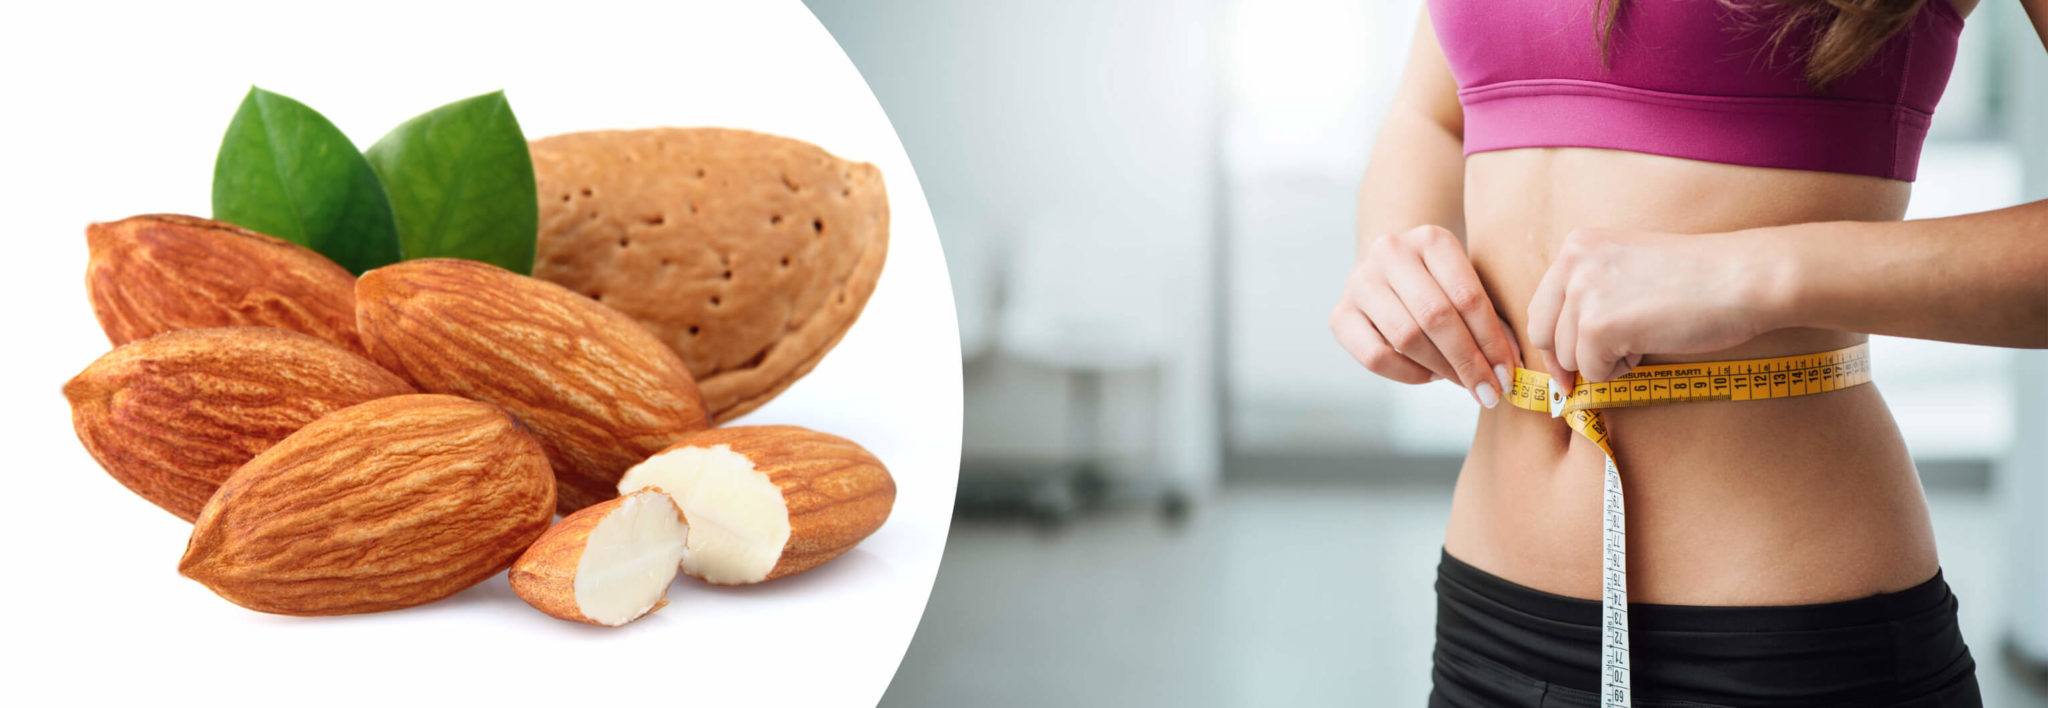 Как орехи помогают похудеть